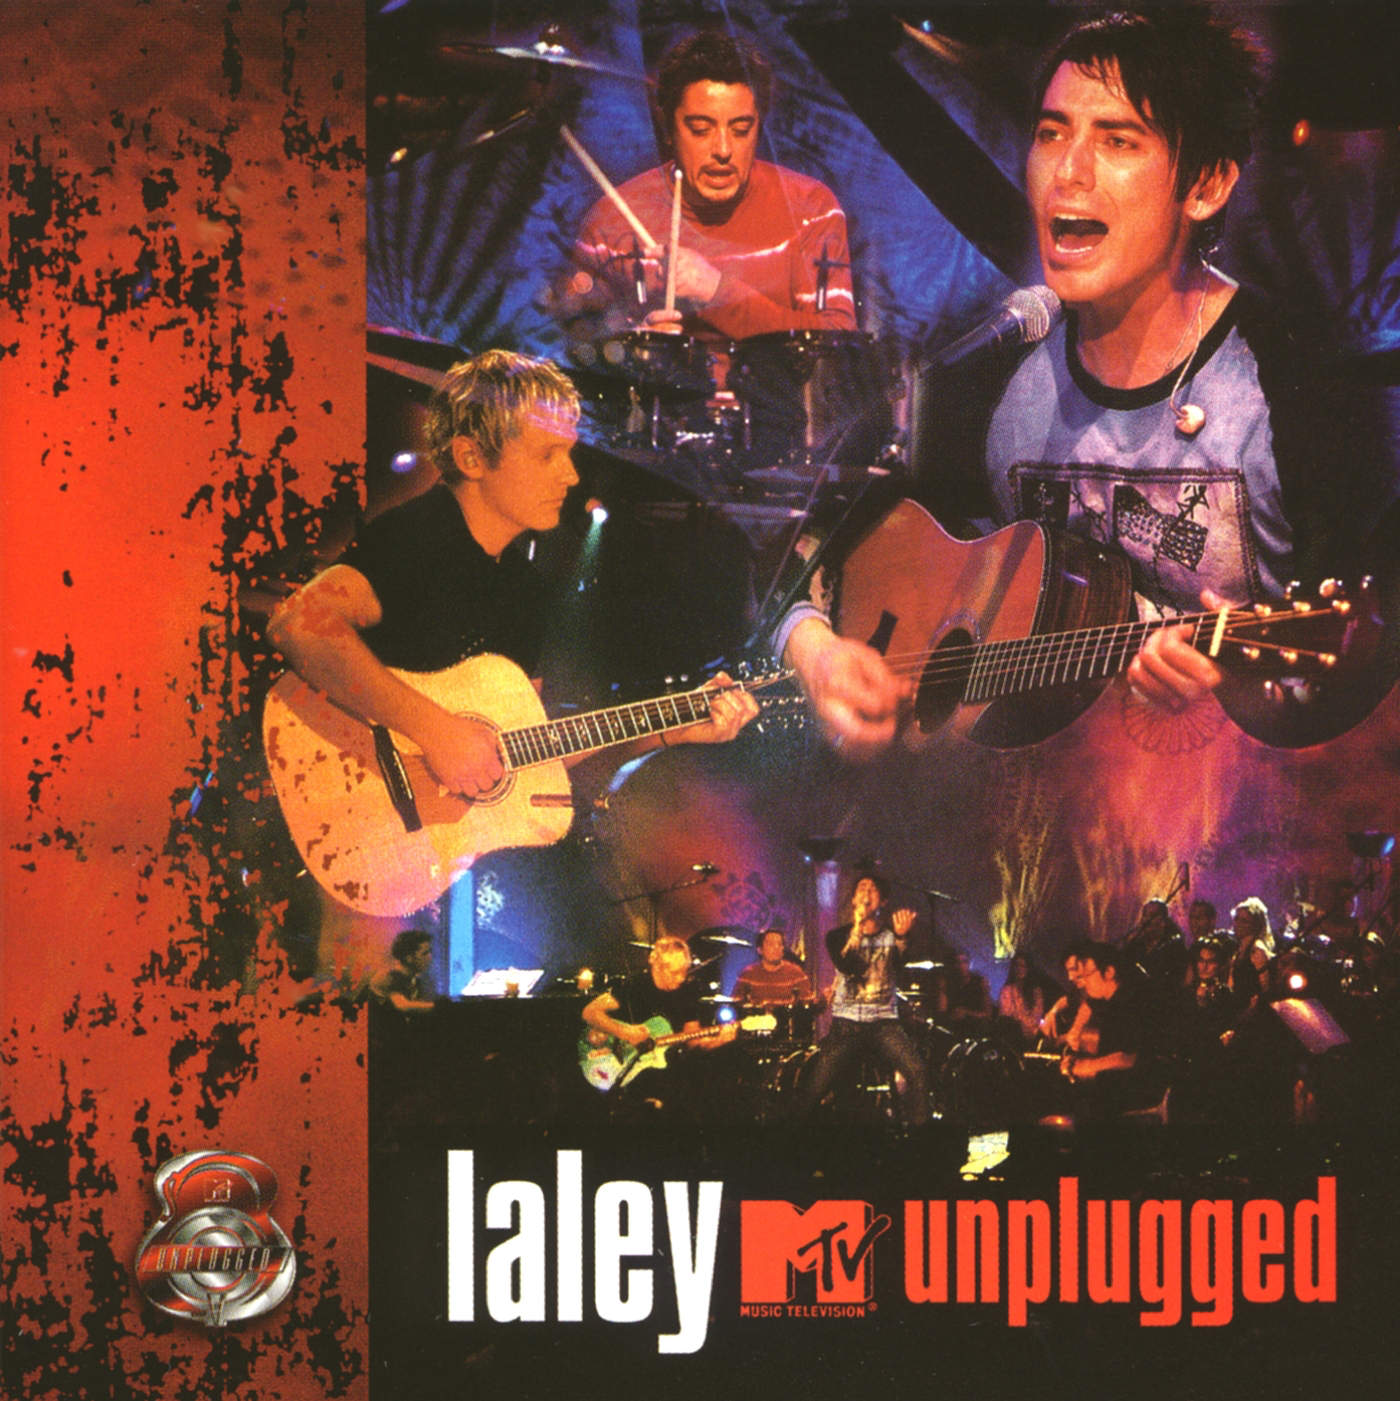 La Ley — MTV Unplugged cover artwork